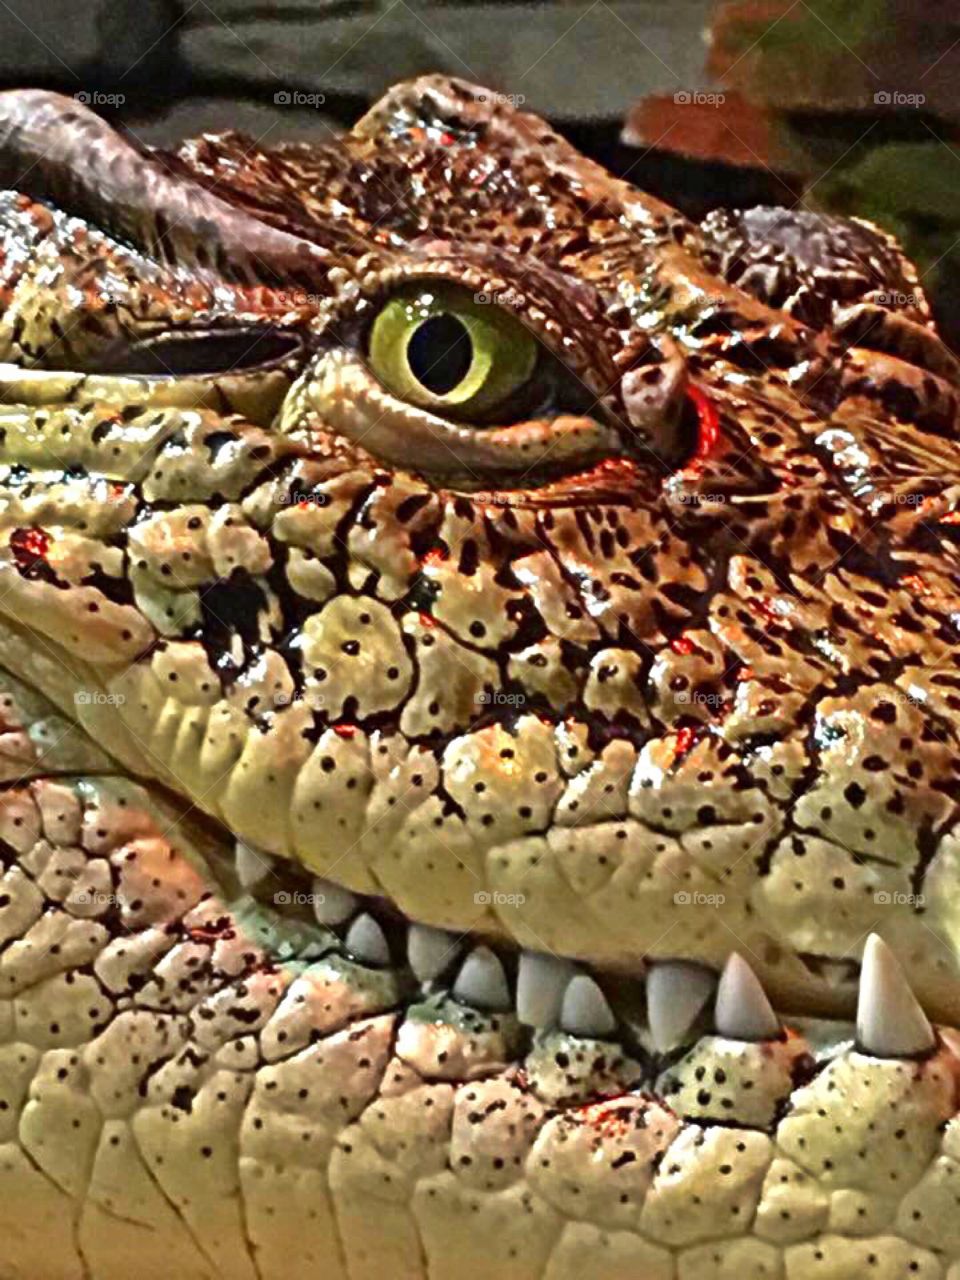 Closeup of a Nile Crocodile.